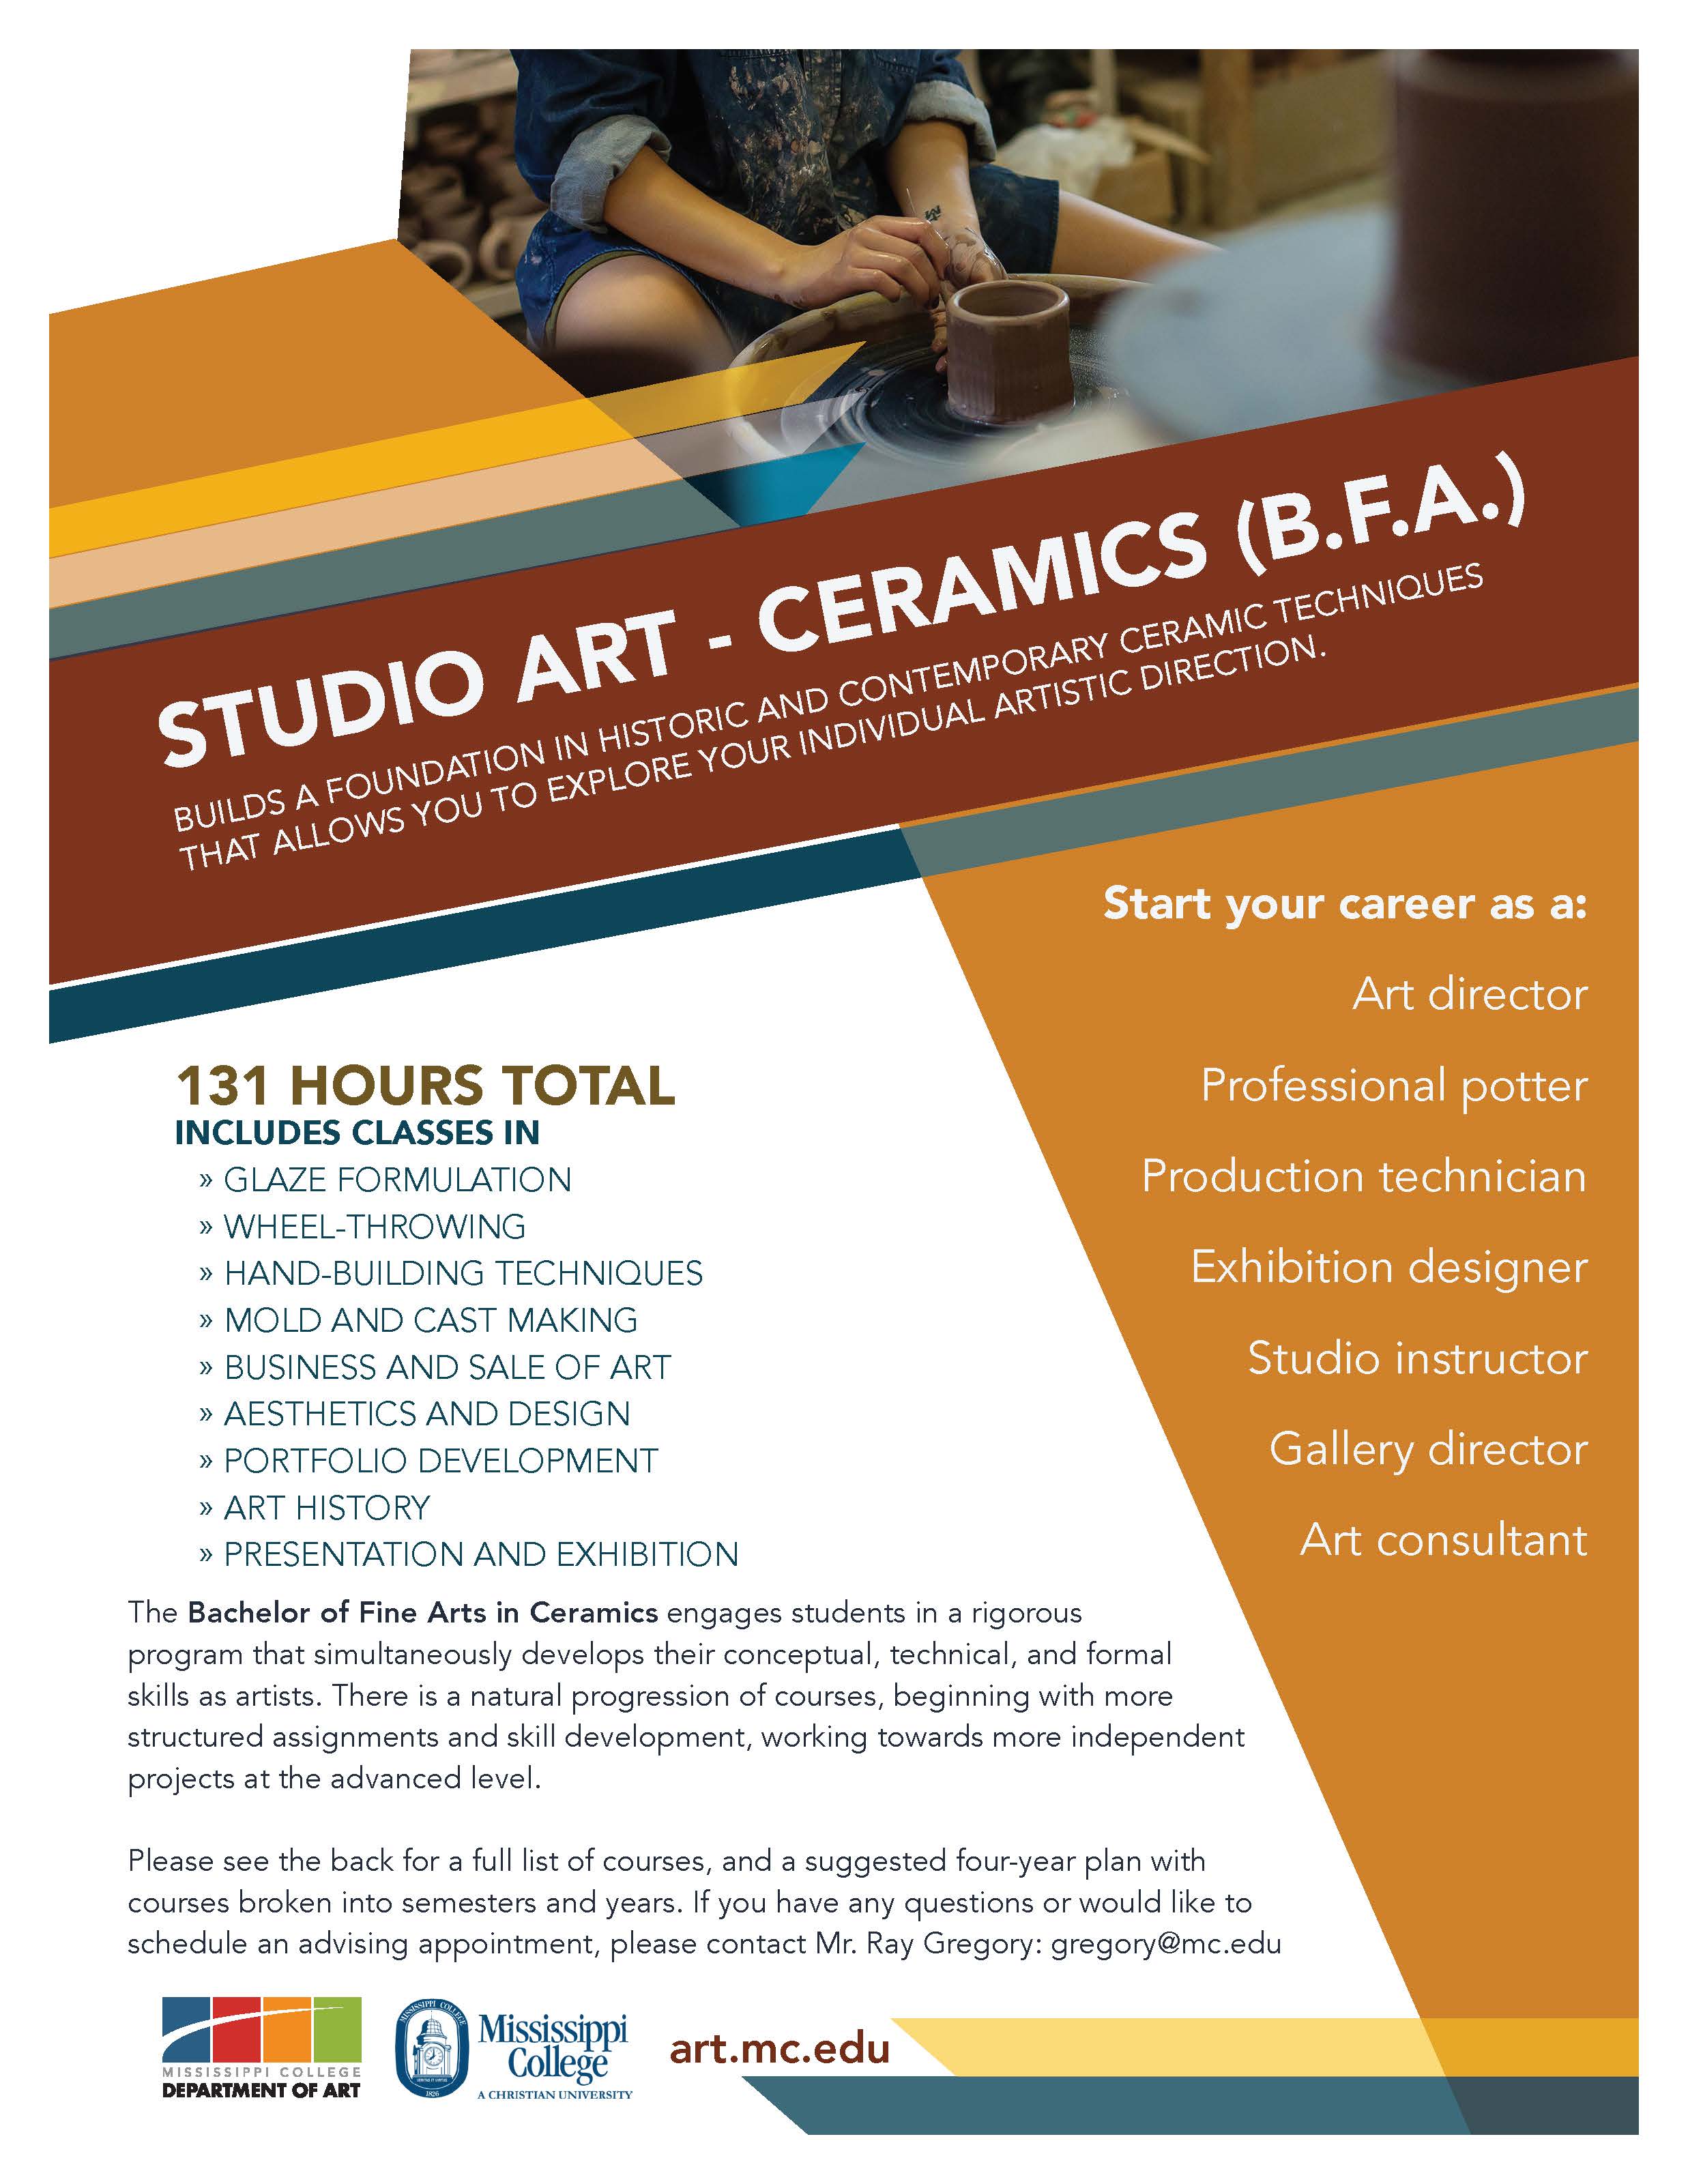 Studio Art - Ceramics, B.F.A. Flyer